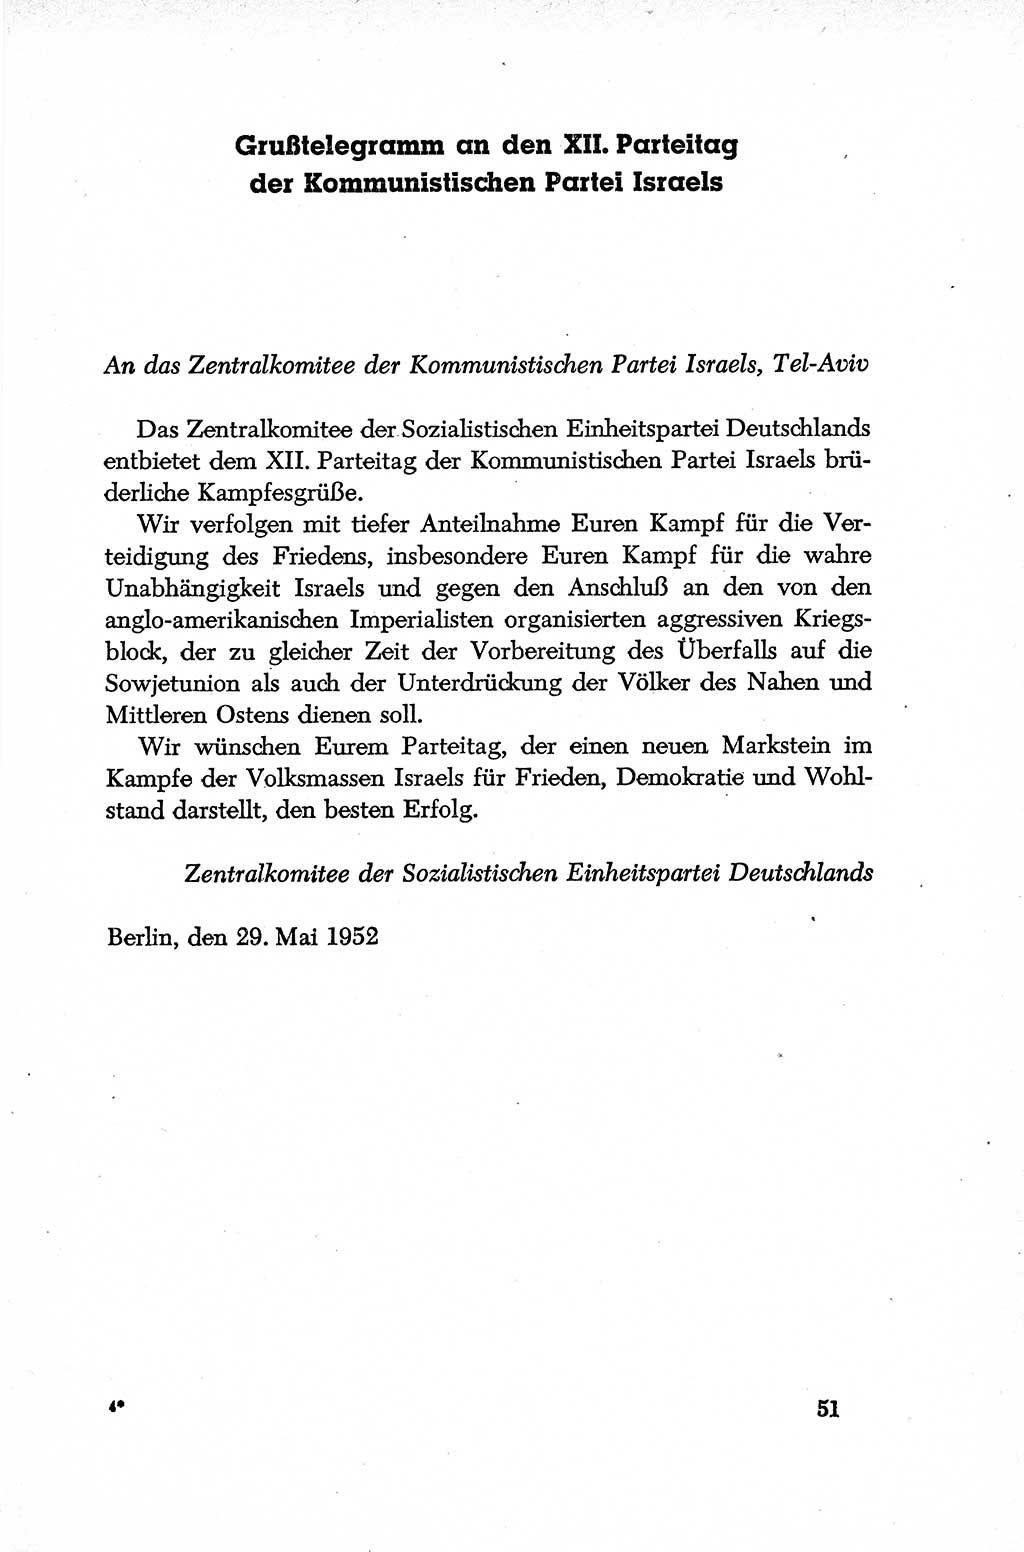 Dokumente der Sozialistischen Einheitspartei Deutschlands (SED) [Deutsche Demokratische Republik (DDR)] 1952-1953, Seite 51 (Dok. SED DDR 1952-1953, S. 51)